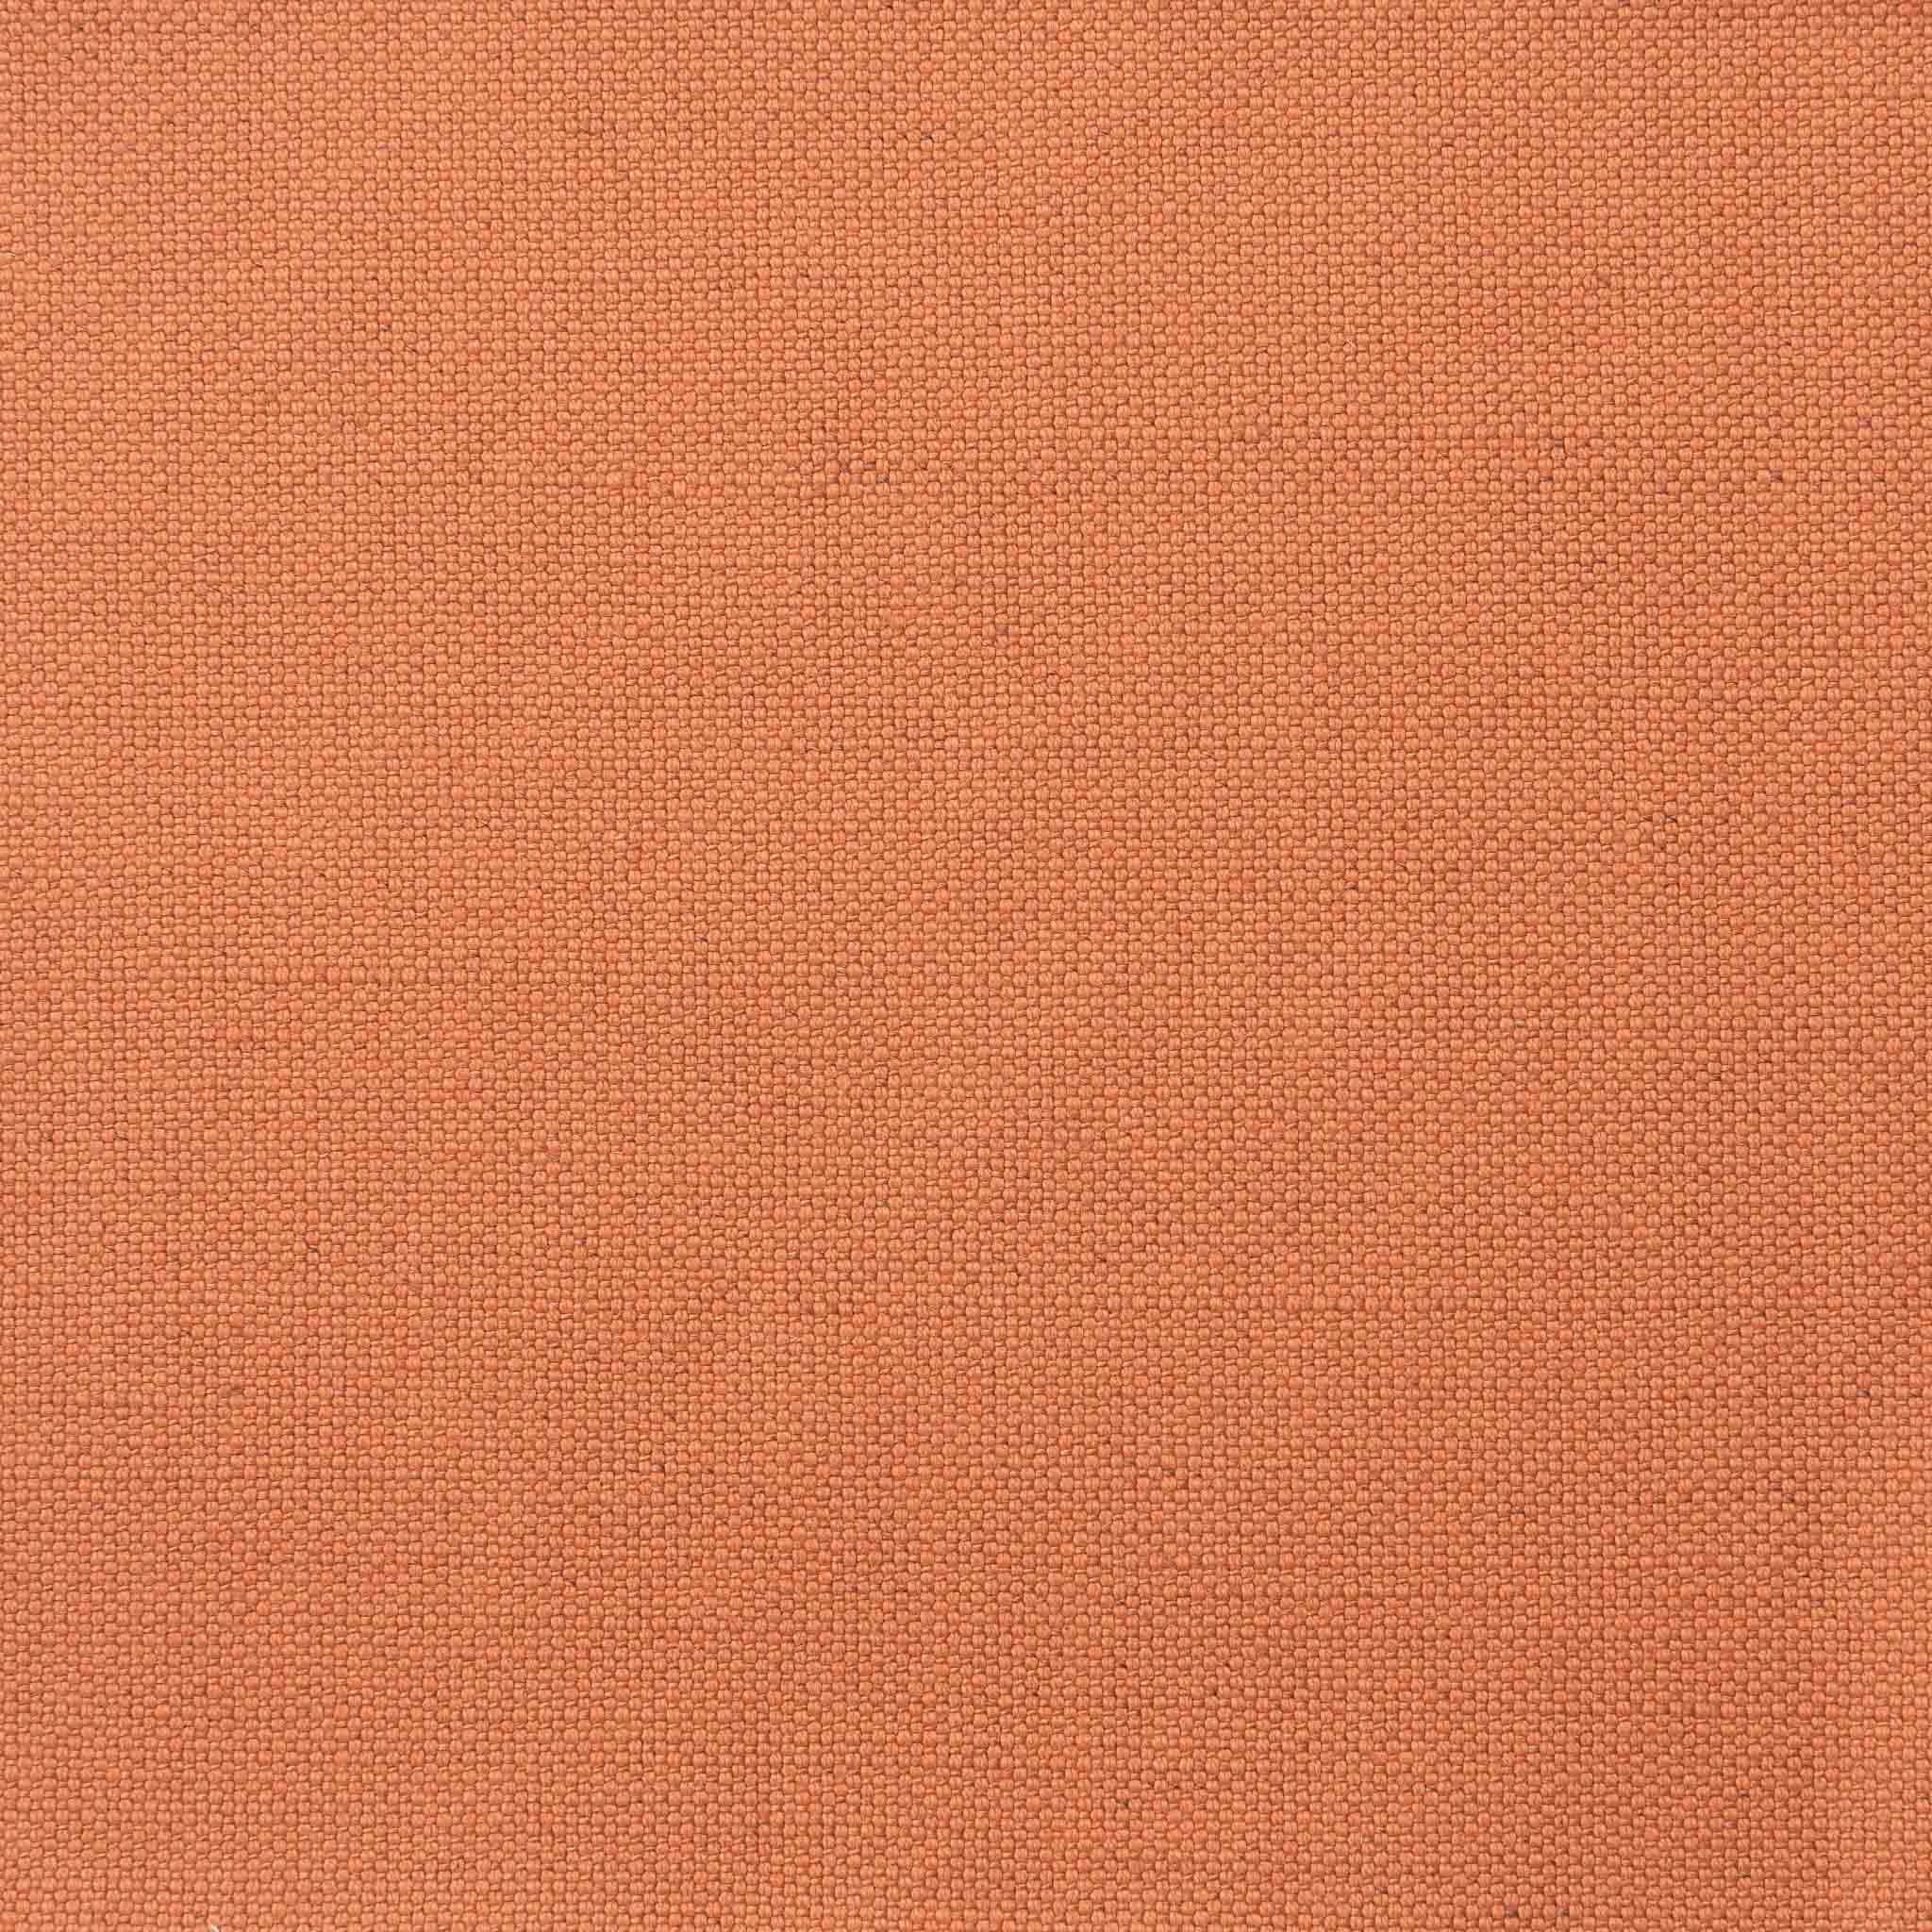 Woven Plain Fabric - Clovelly 50/109 Conch Pink | Nicholas Engert Interiors